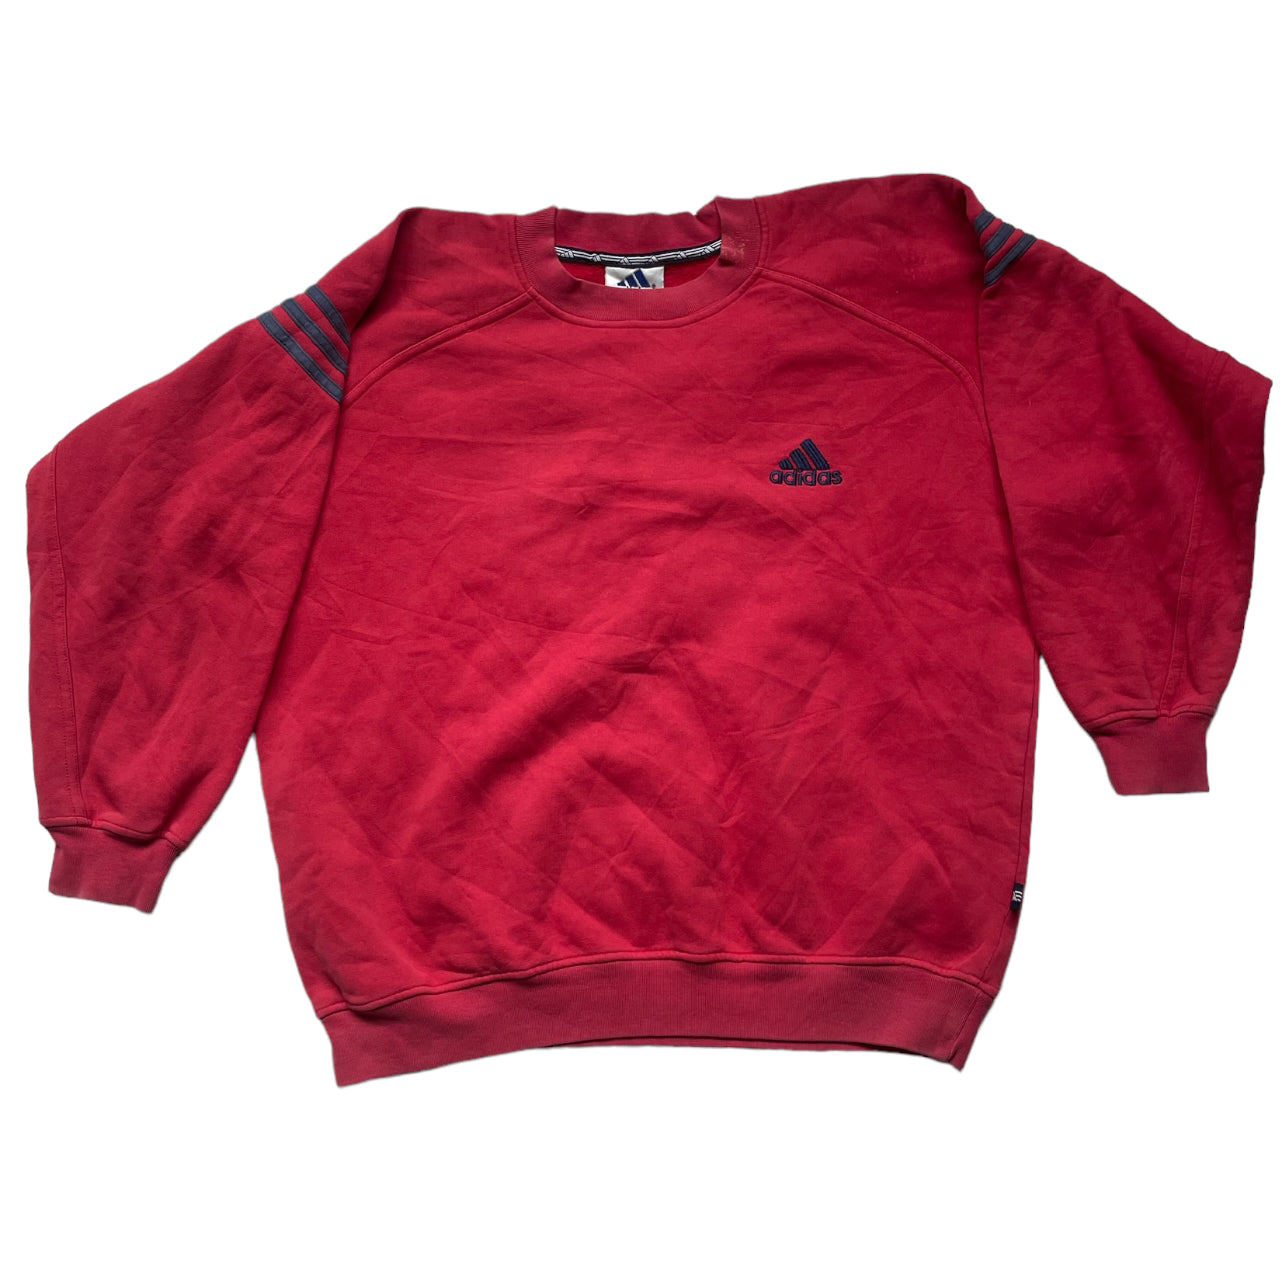 Vintage Adidas Sweatshirt -  Norway